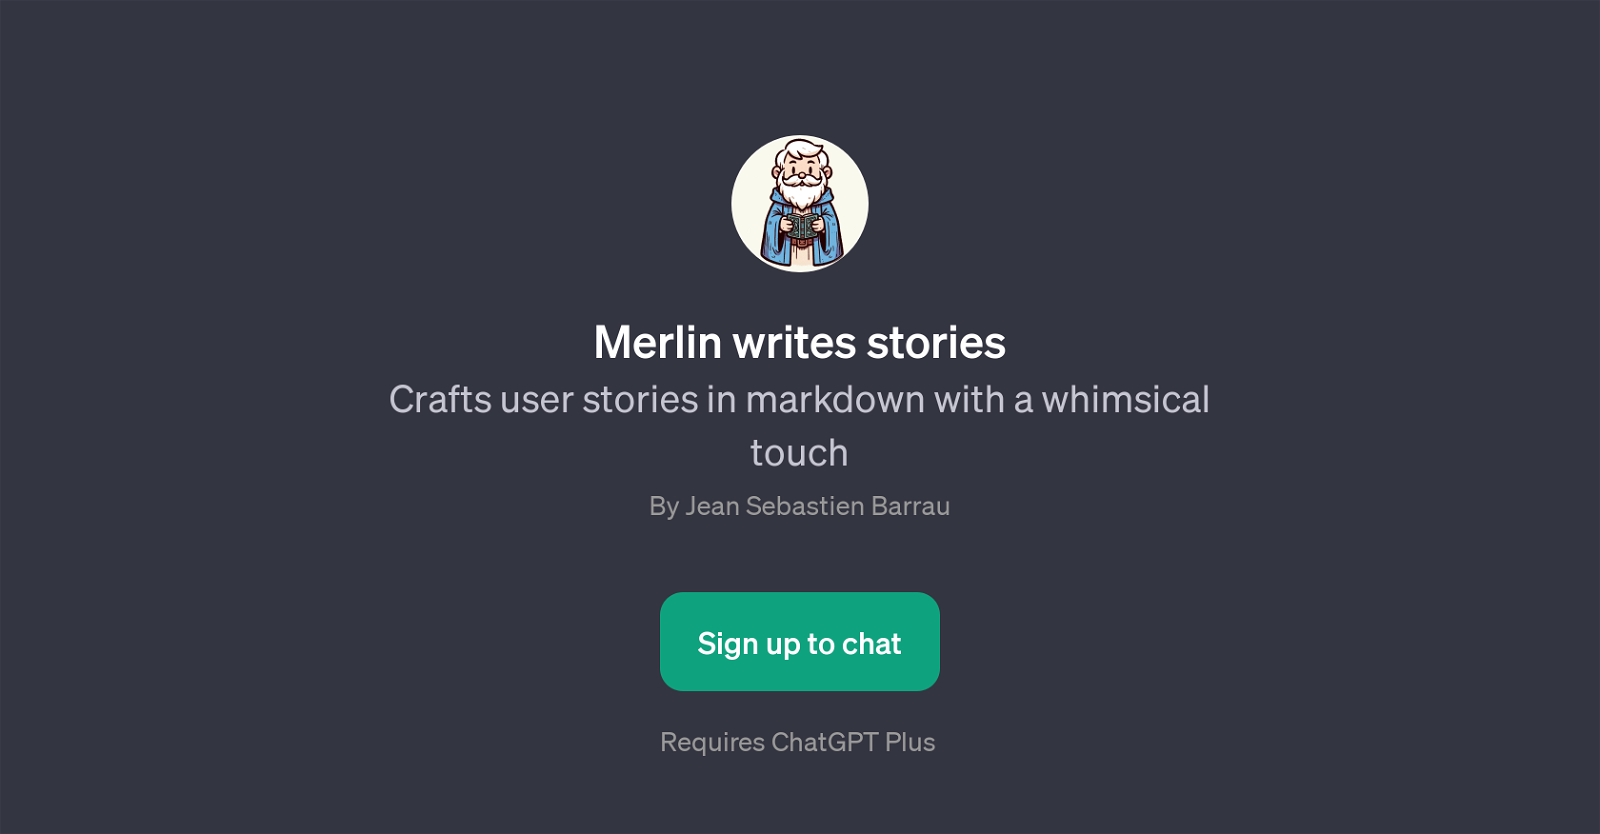 Merlin Writes Stories website